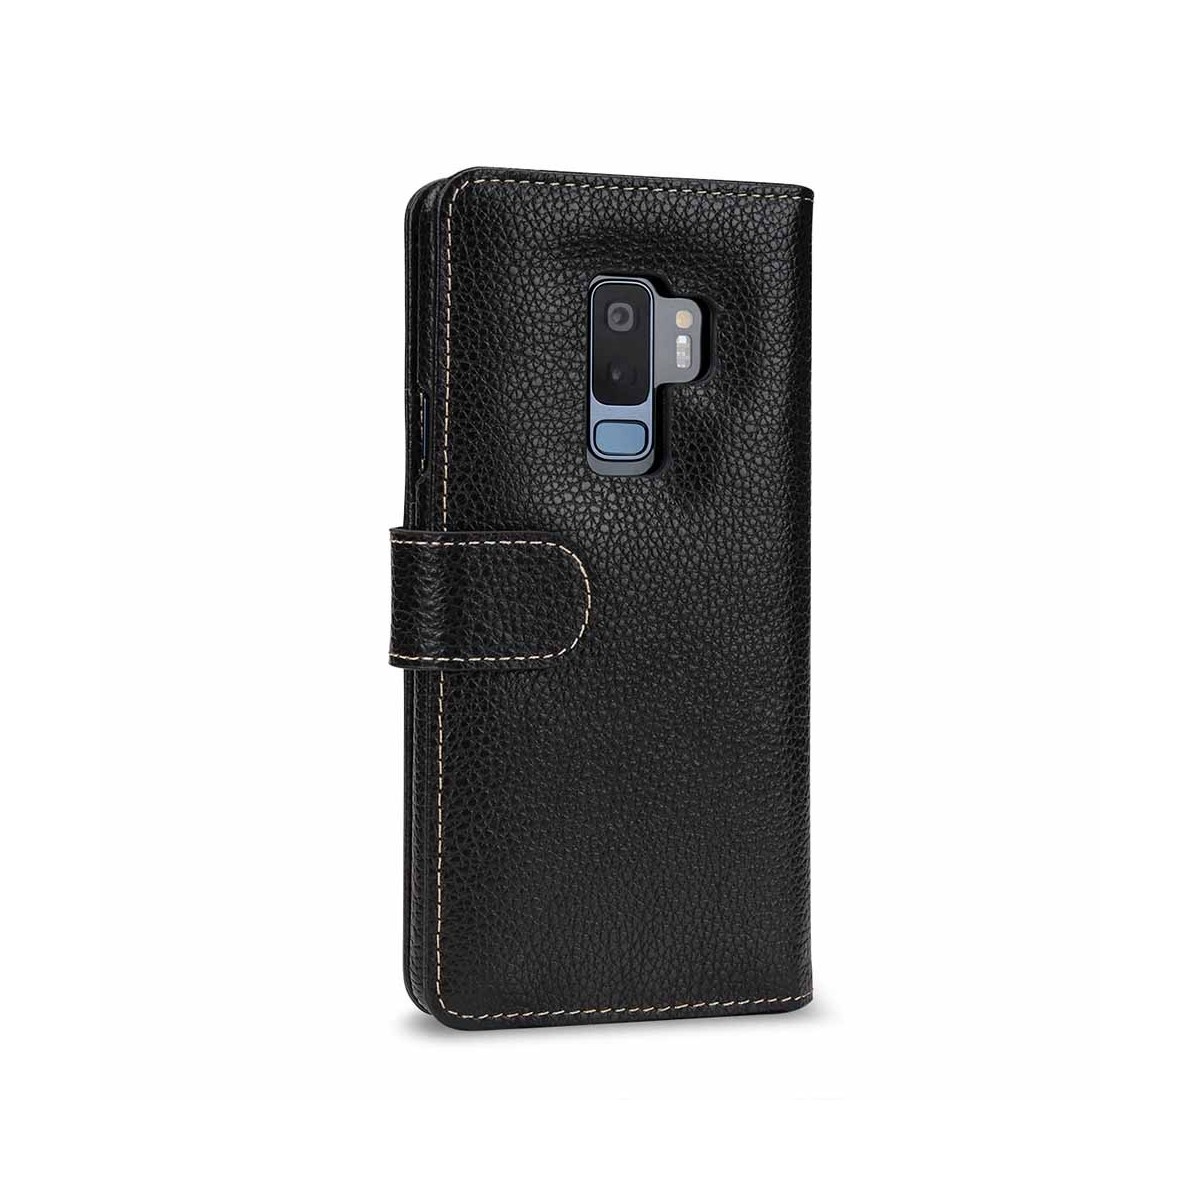 Etui Galaxy S9+ porte-cartes grainé noir en cuir véritable - Stilgut